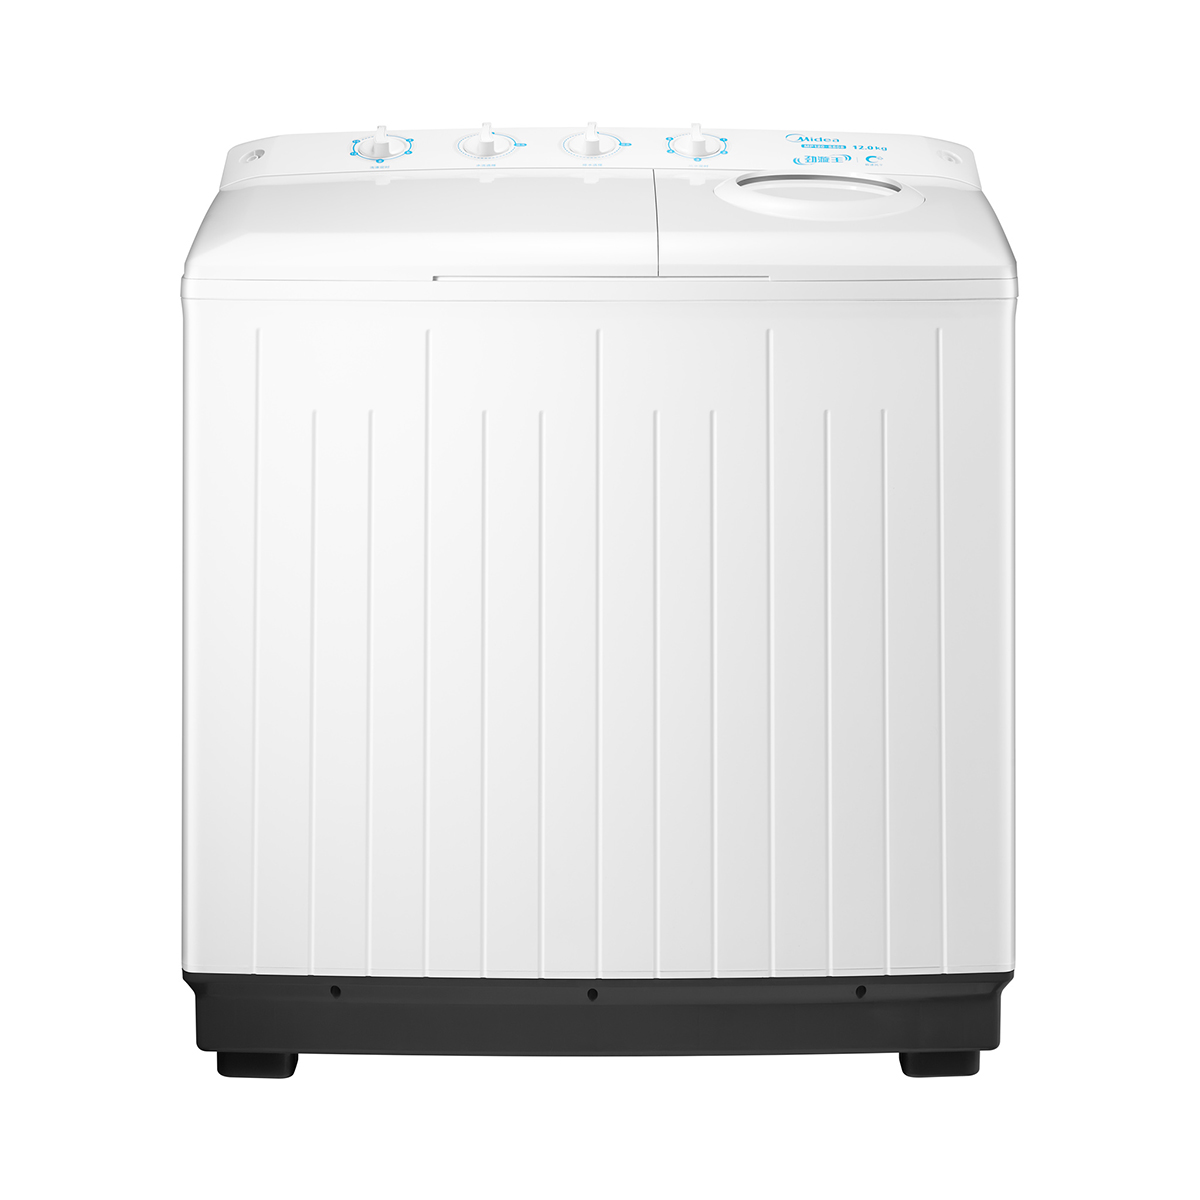 Midea/美的 MP120-S808洗衣机 说明书.pdf